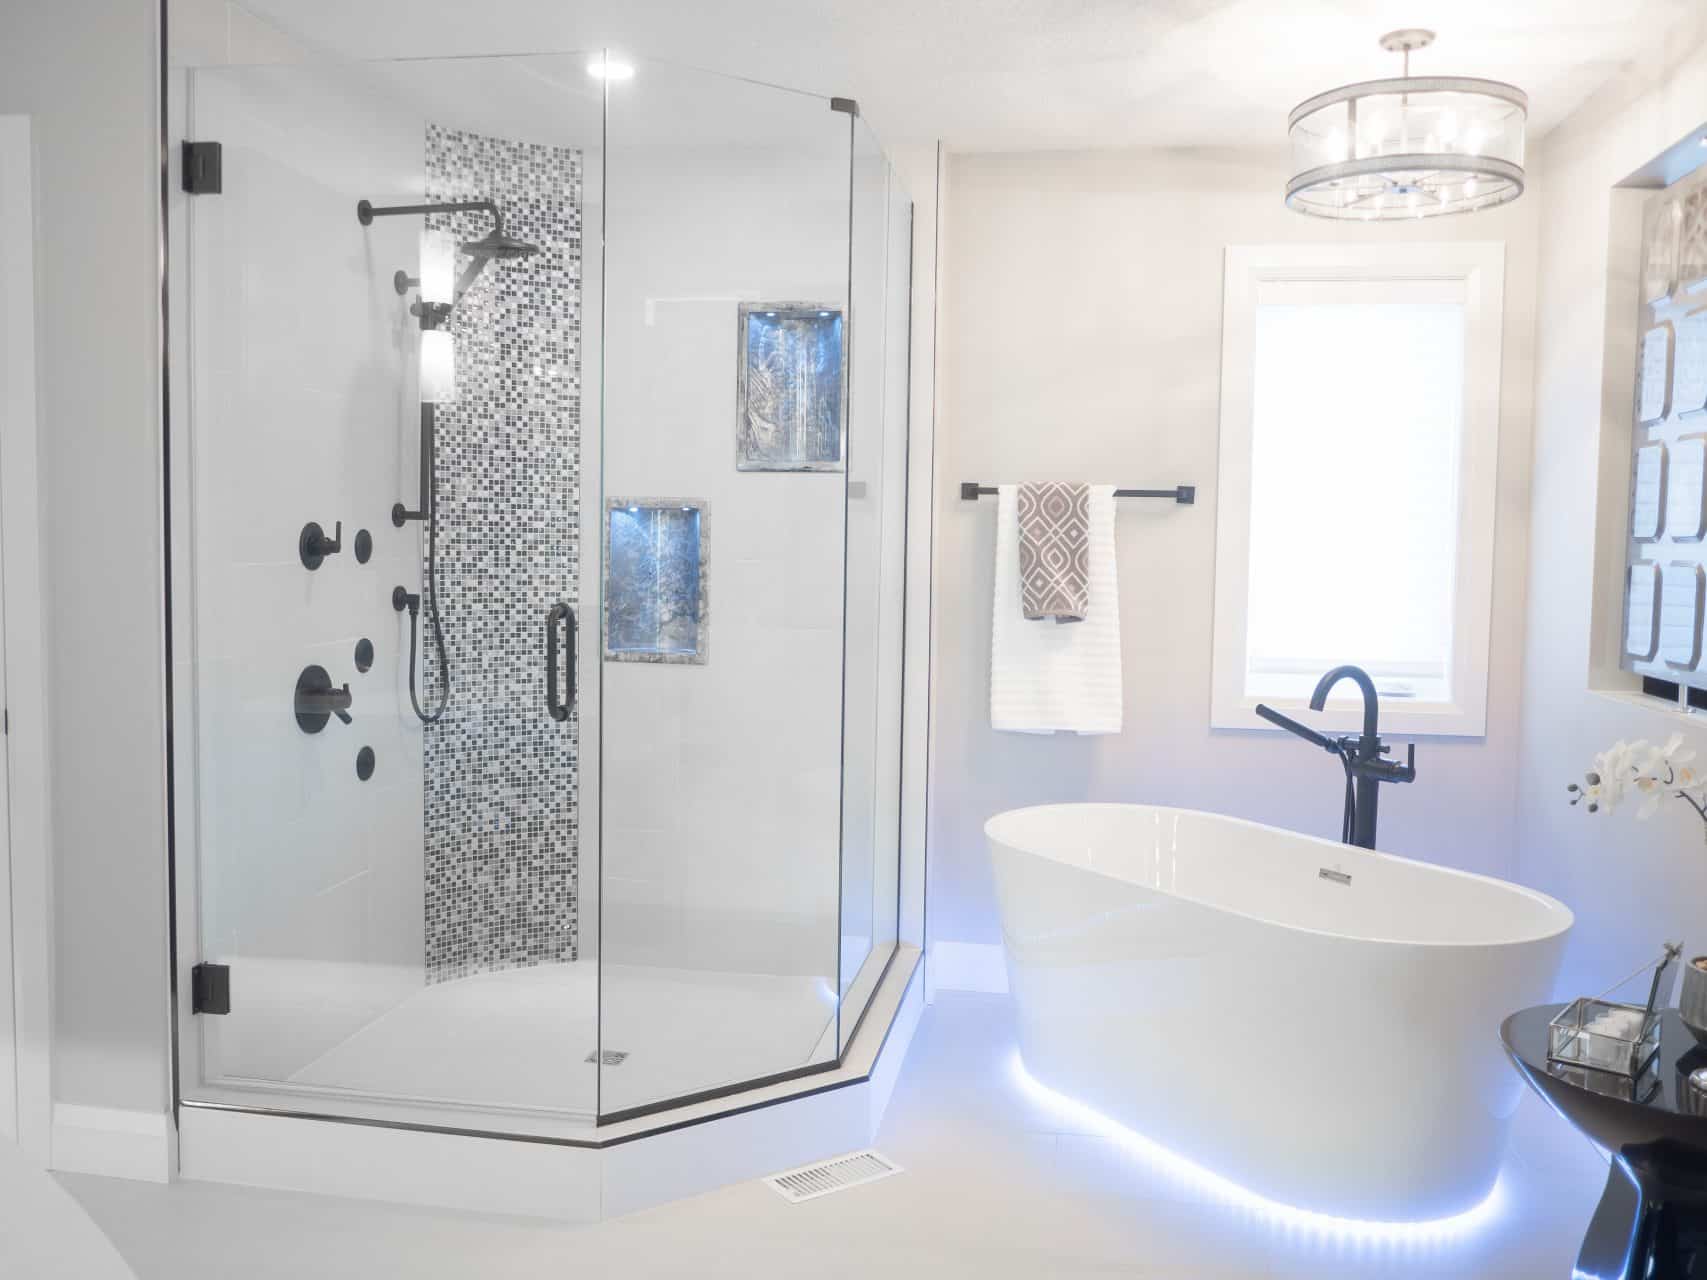 tall glass shower and deep bathtub with glow lights around it Grande douche en verre et baignoire profonde avec des petites lumières.